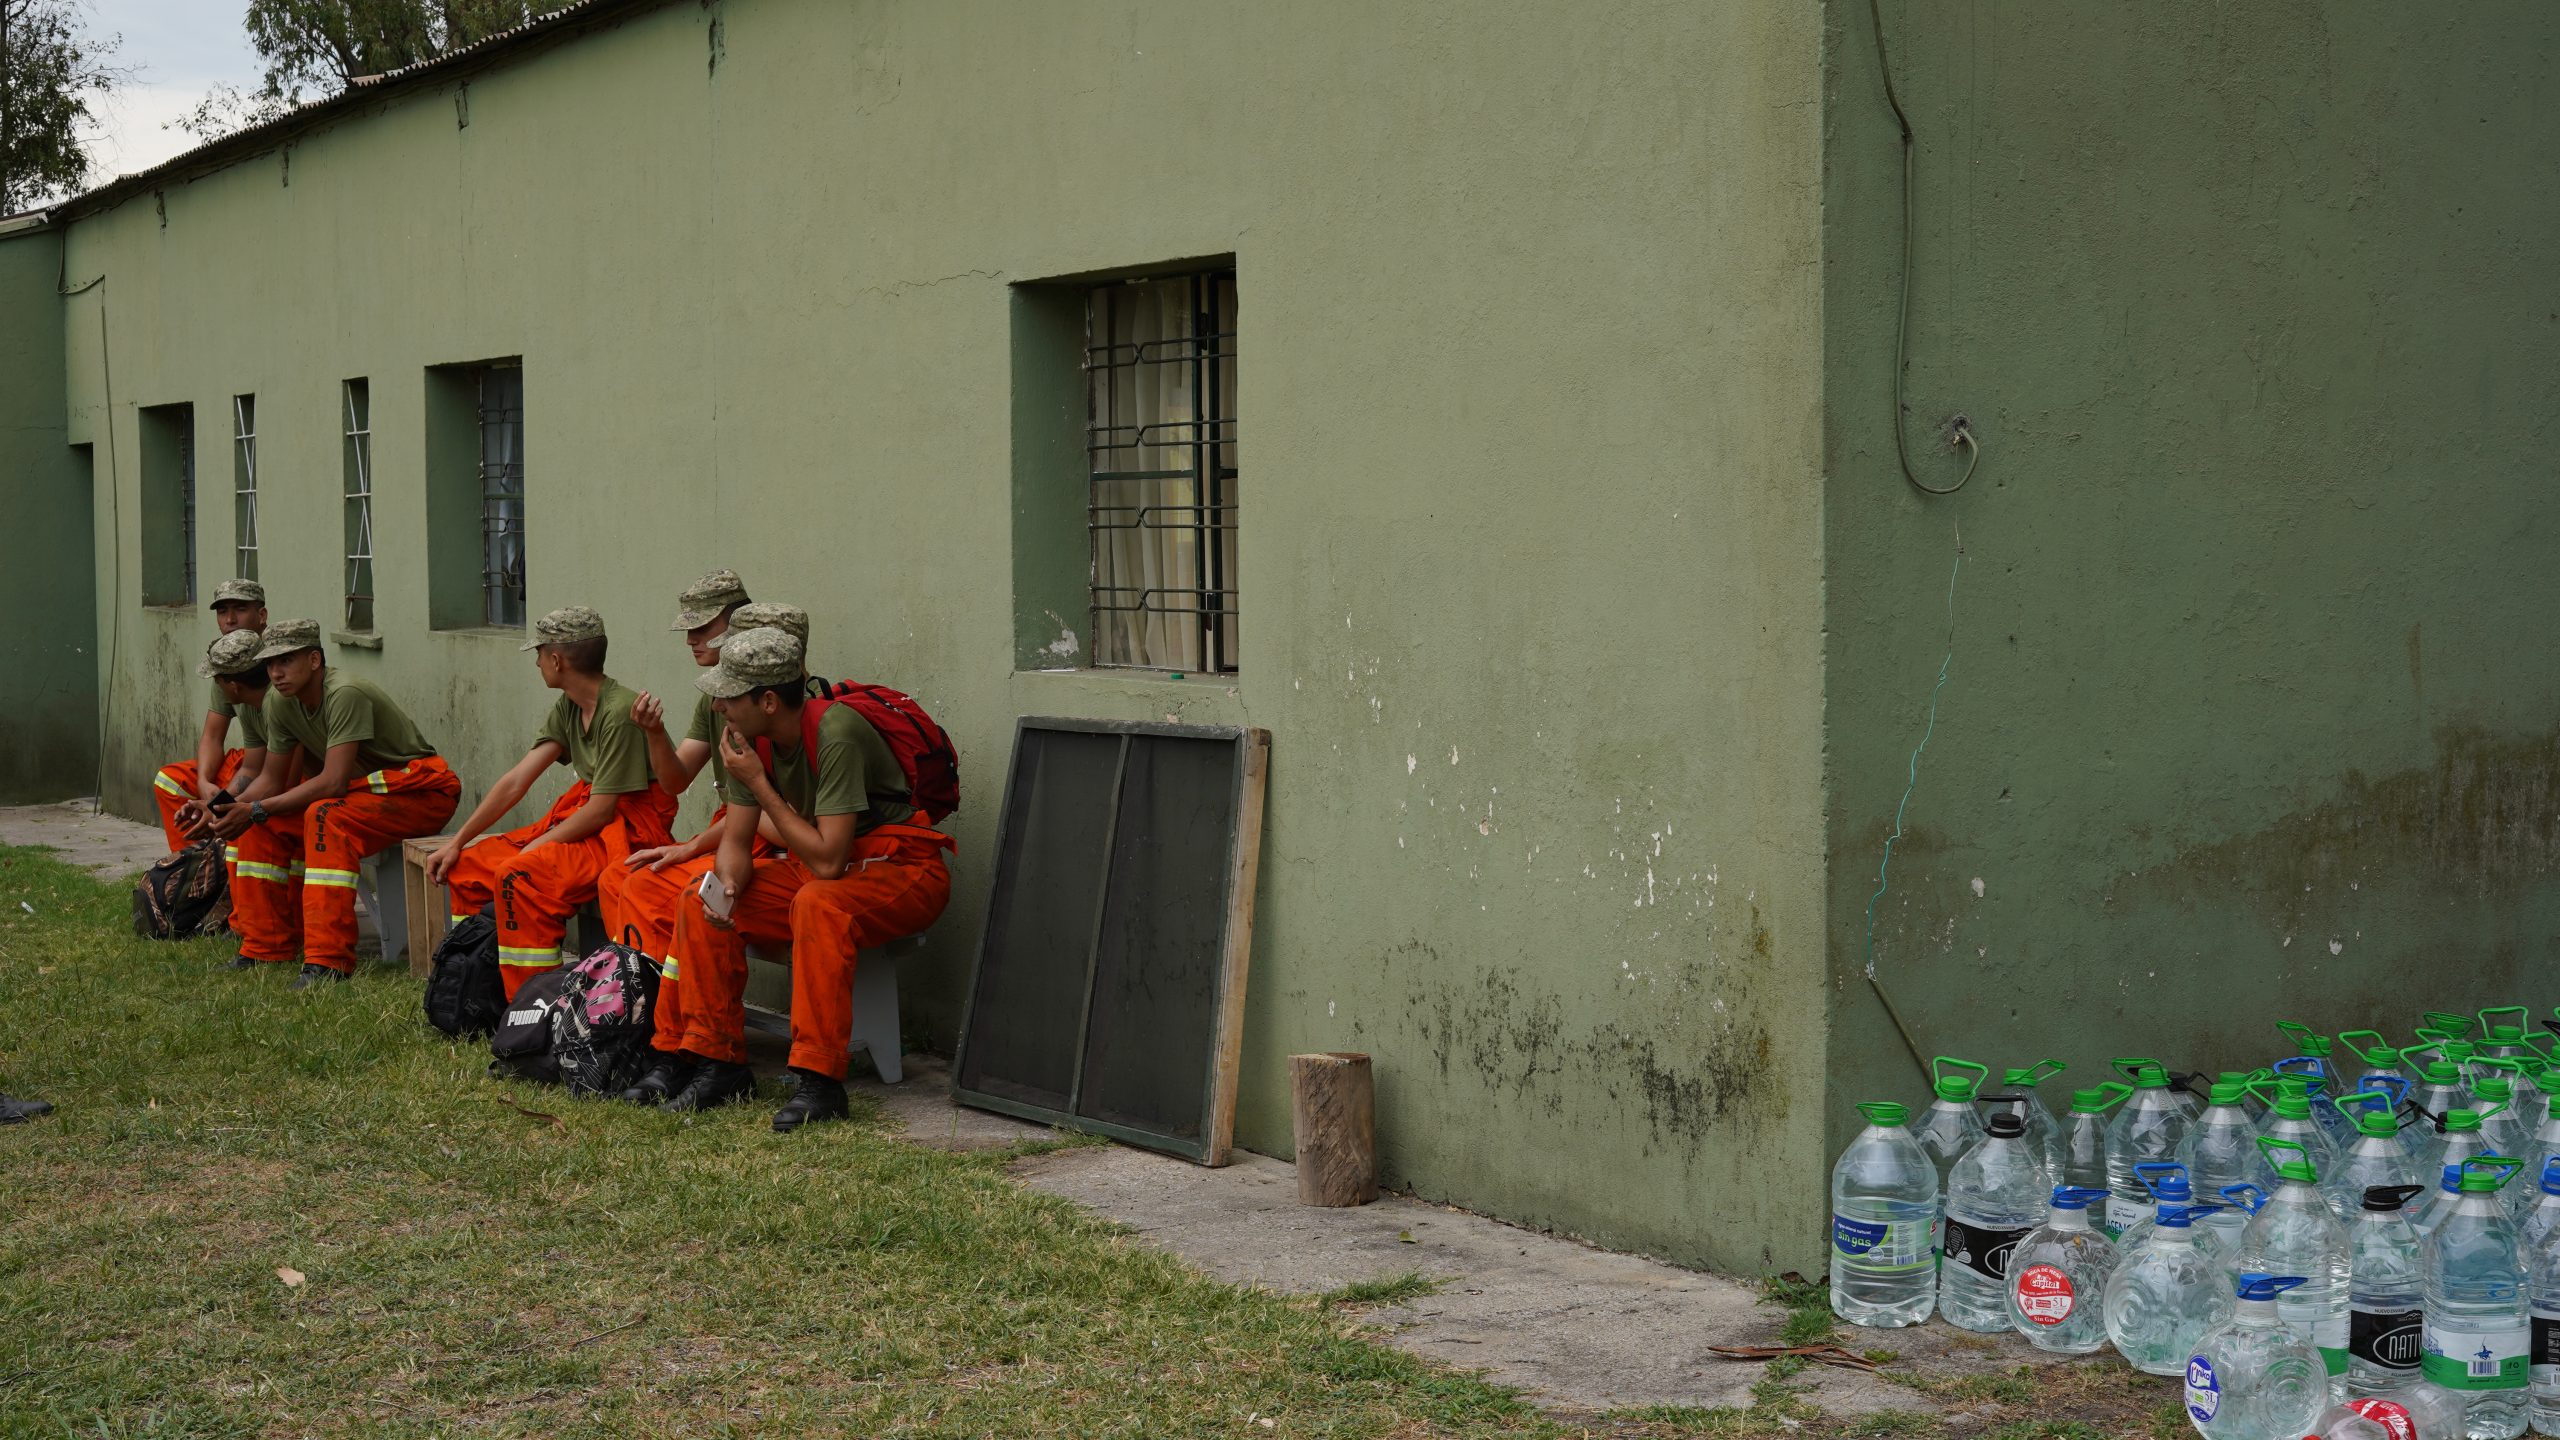 Bomberos descansan luego del combate al fuego. Foto: Faustina Bartaburu